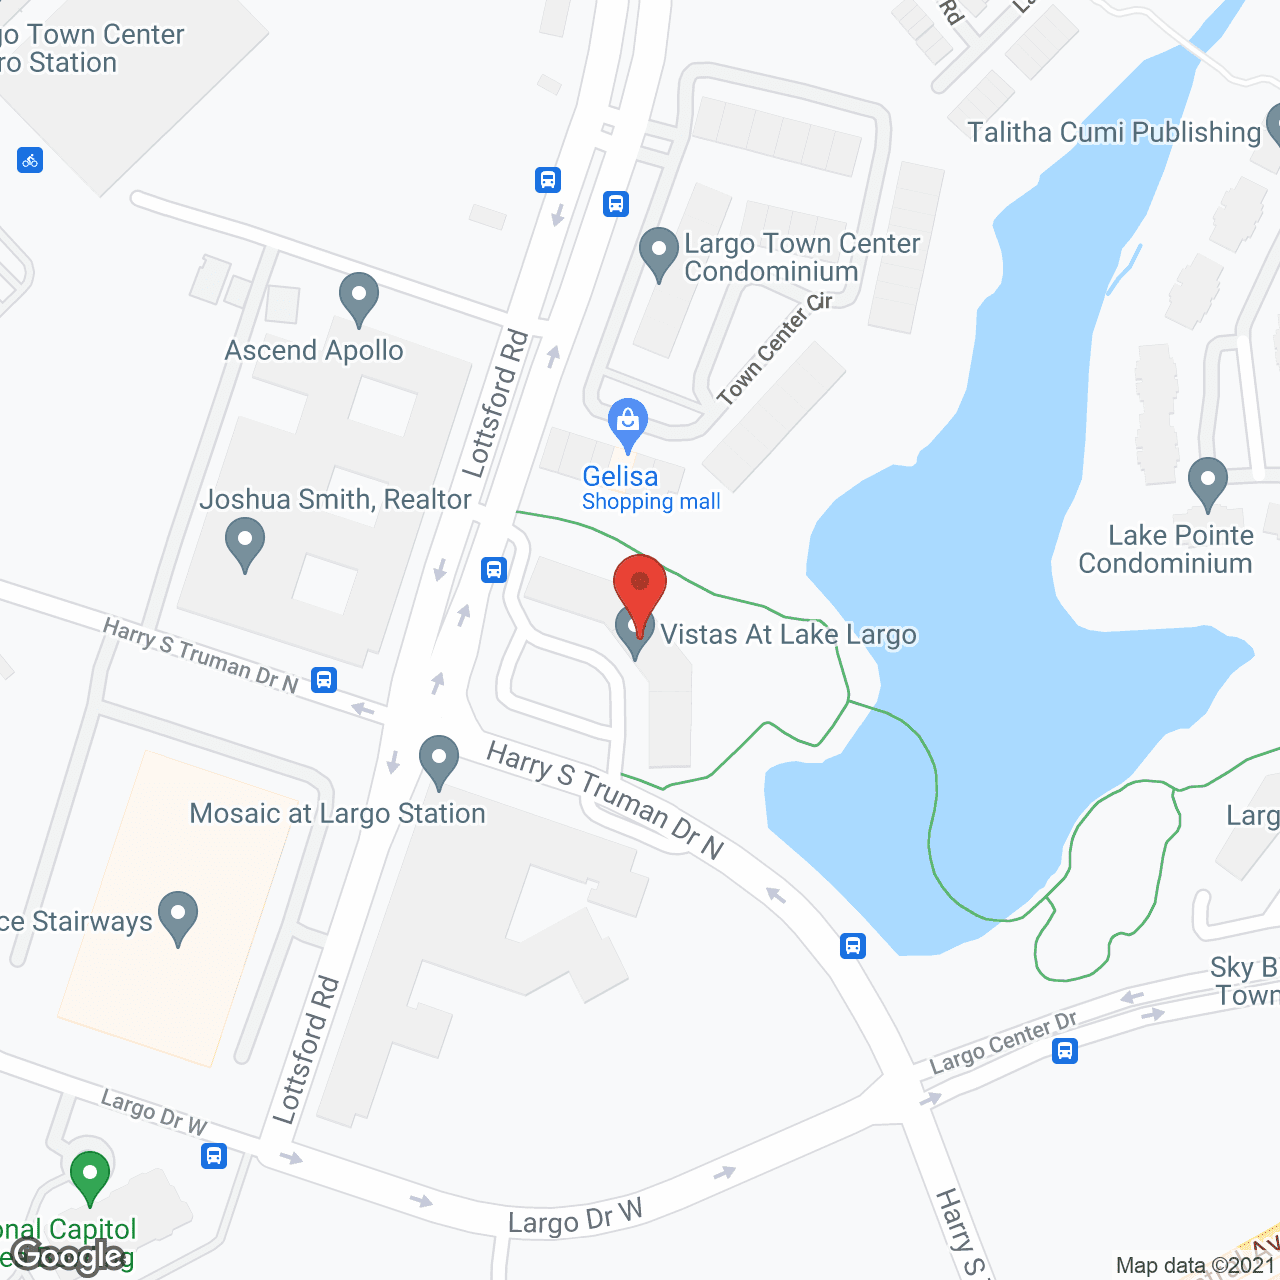 The Vistas at Lake Largo in google map